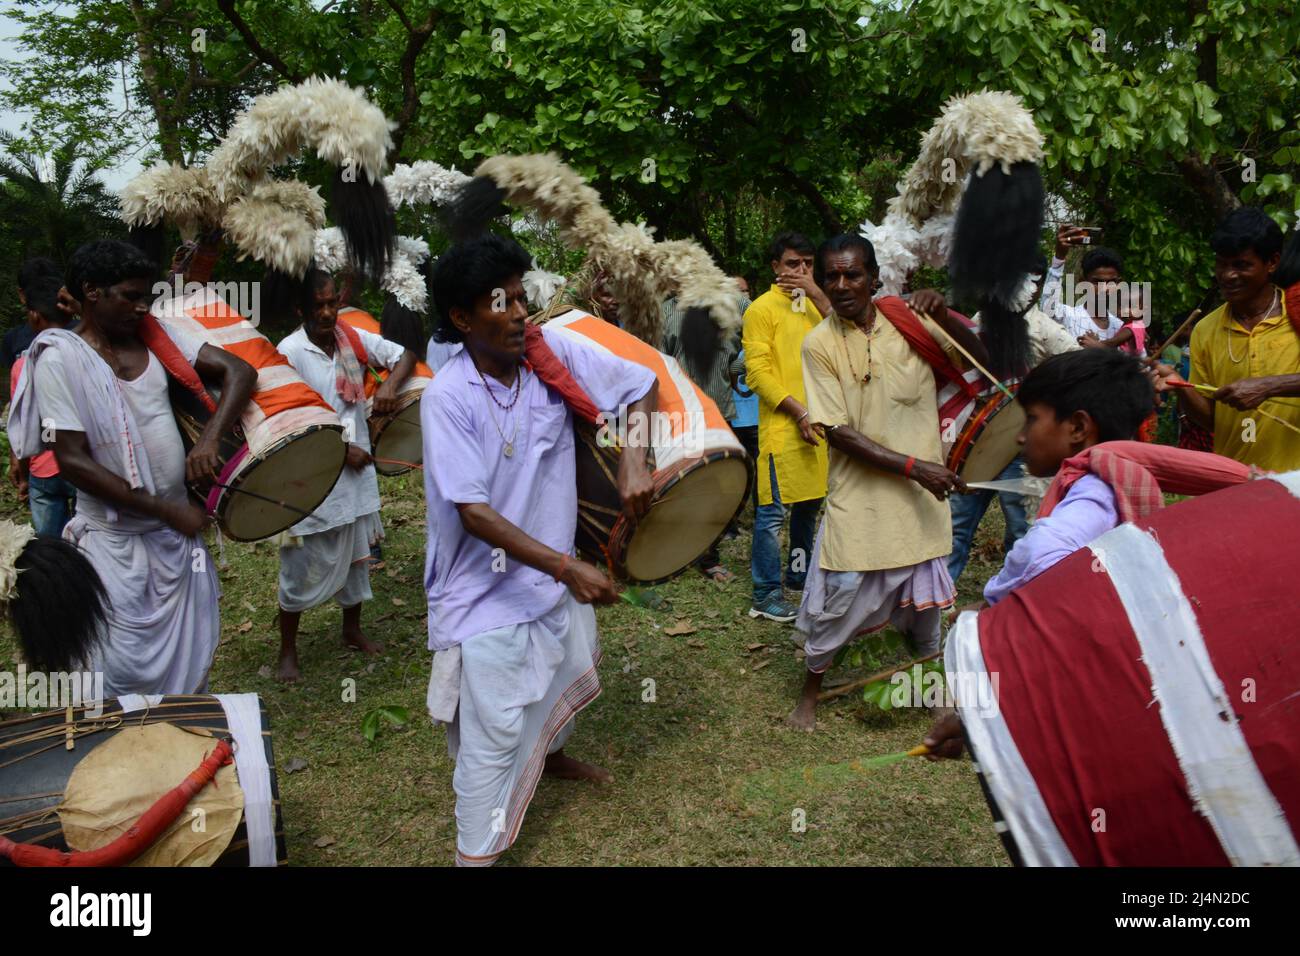 Dhakis sind traditionelle hinduistische Trommler, die die Dhak (Trommel) während hinduistischer Feste, vor allem in Bengalen, spielen. Das Dhak ist ein Schlaginstrument, es ist eine Barrel-Trommel aus Mangoholz. Die Trommelmembran besteht aus Büffelhaut und Ziegenleder, sie wird am Hals aufgehängt, an der Taille gebunden und auf dem Schoß oder dem Boden gehalten, und wird in der Regel mit Holzstäben gespielt. Die linke Seite ist beschichtet, um ein schwereres Geräusch zu erhalten. Es wird vor allem von der bengalischen Hindu-Gemeinde gespielt. Dieses Instrument ist in Westbengalen zu finden und wird vor allem bei hinduistischen religiösen Festen, vor allem in Durga Puja, verwendet. (Foto Stockfoto